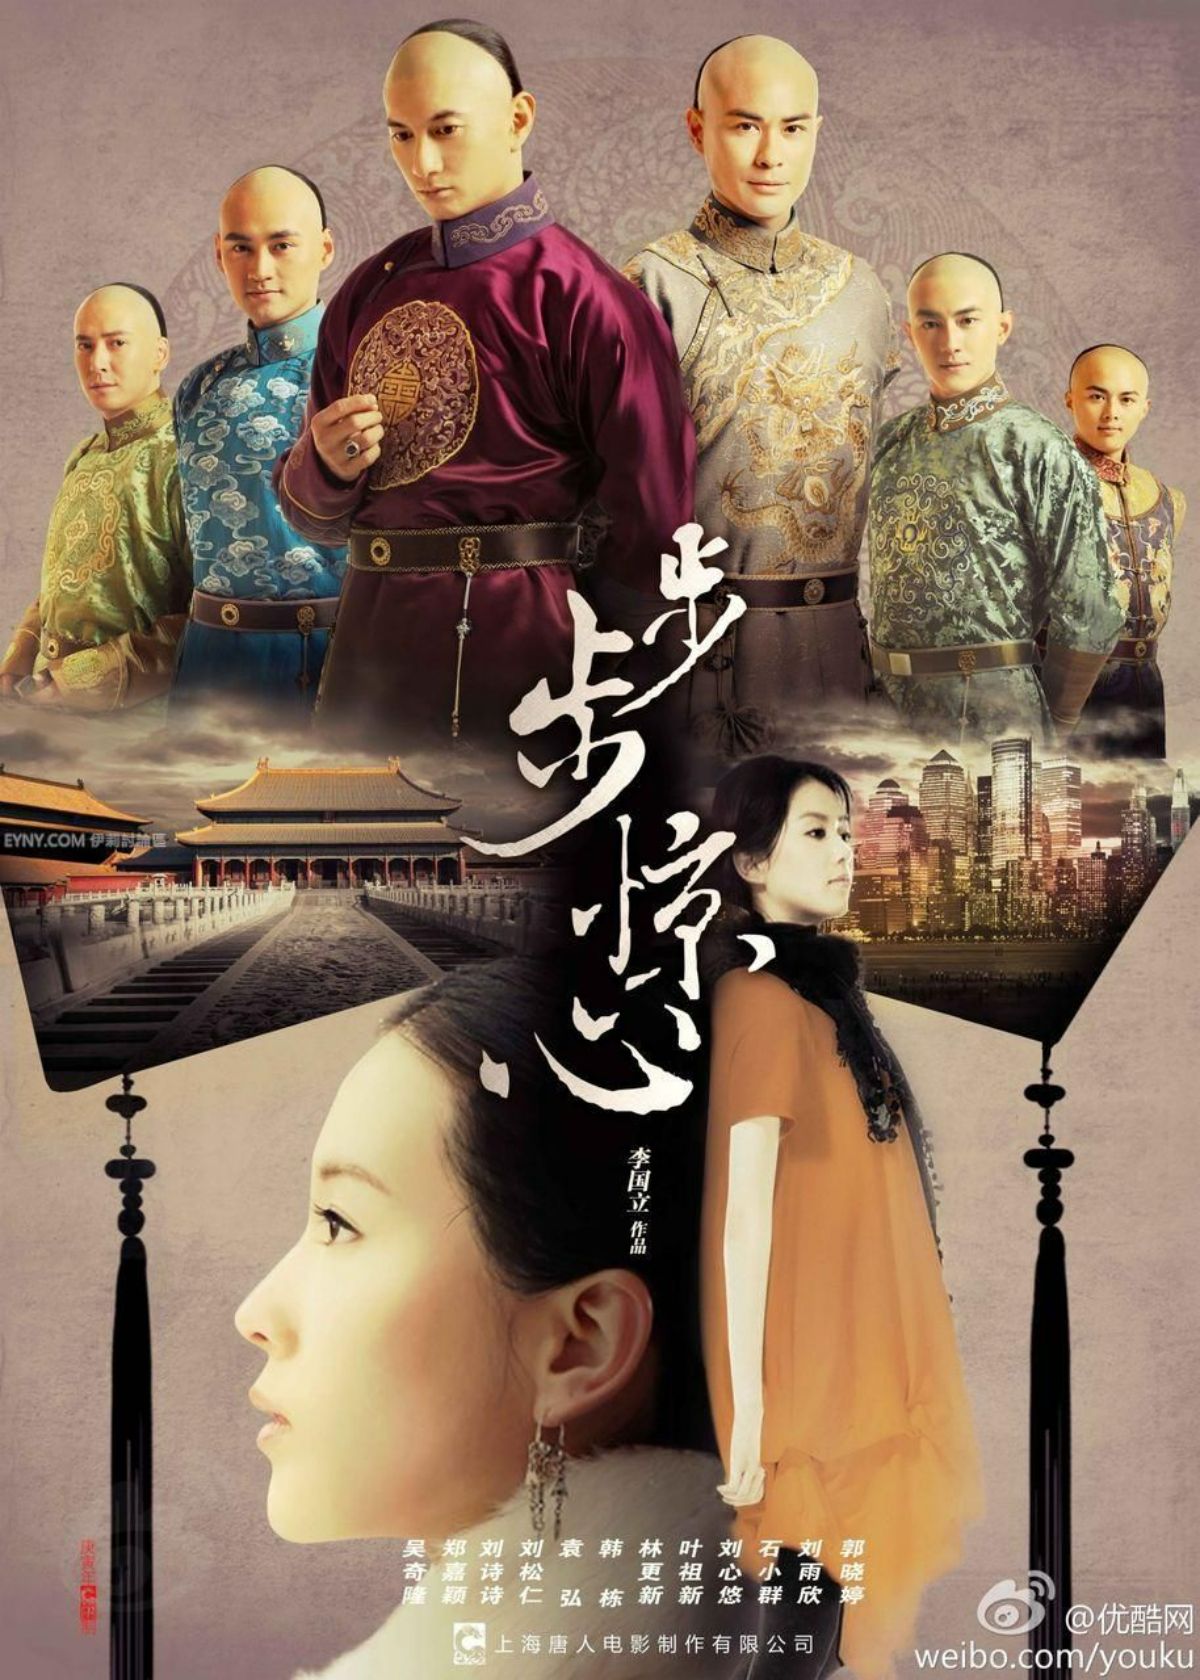 Bộ Bộ Kinh Tâm là bộ phim xuyên không Trung Quốc ra mắt năm 2011 đã lấy đi nước mắt của hàng triệu khán giả